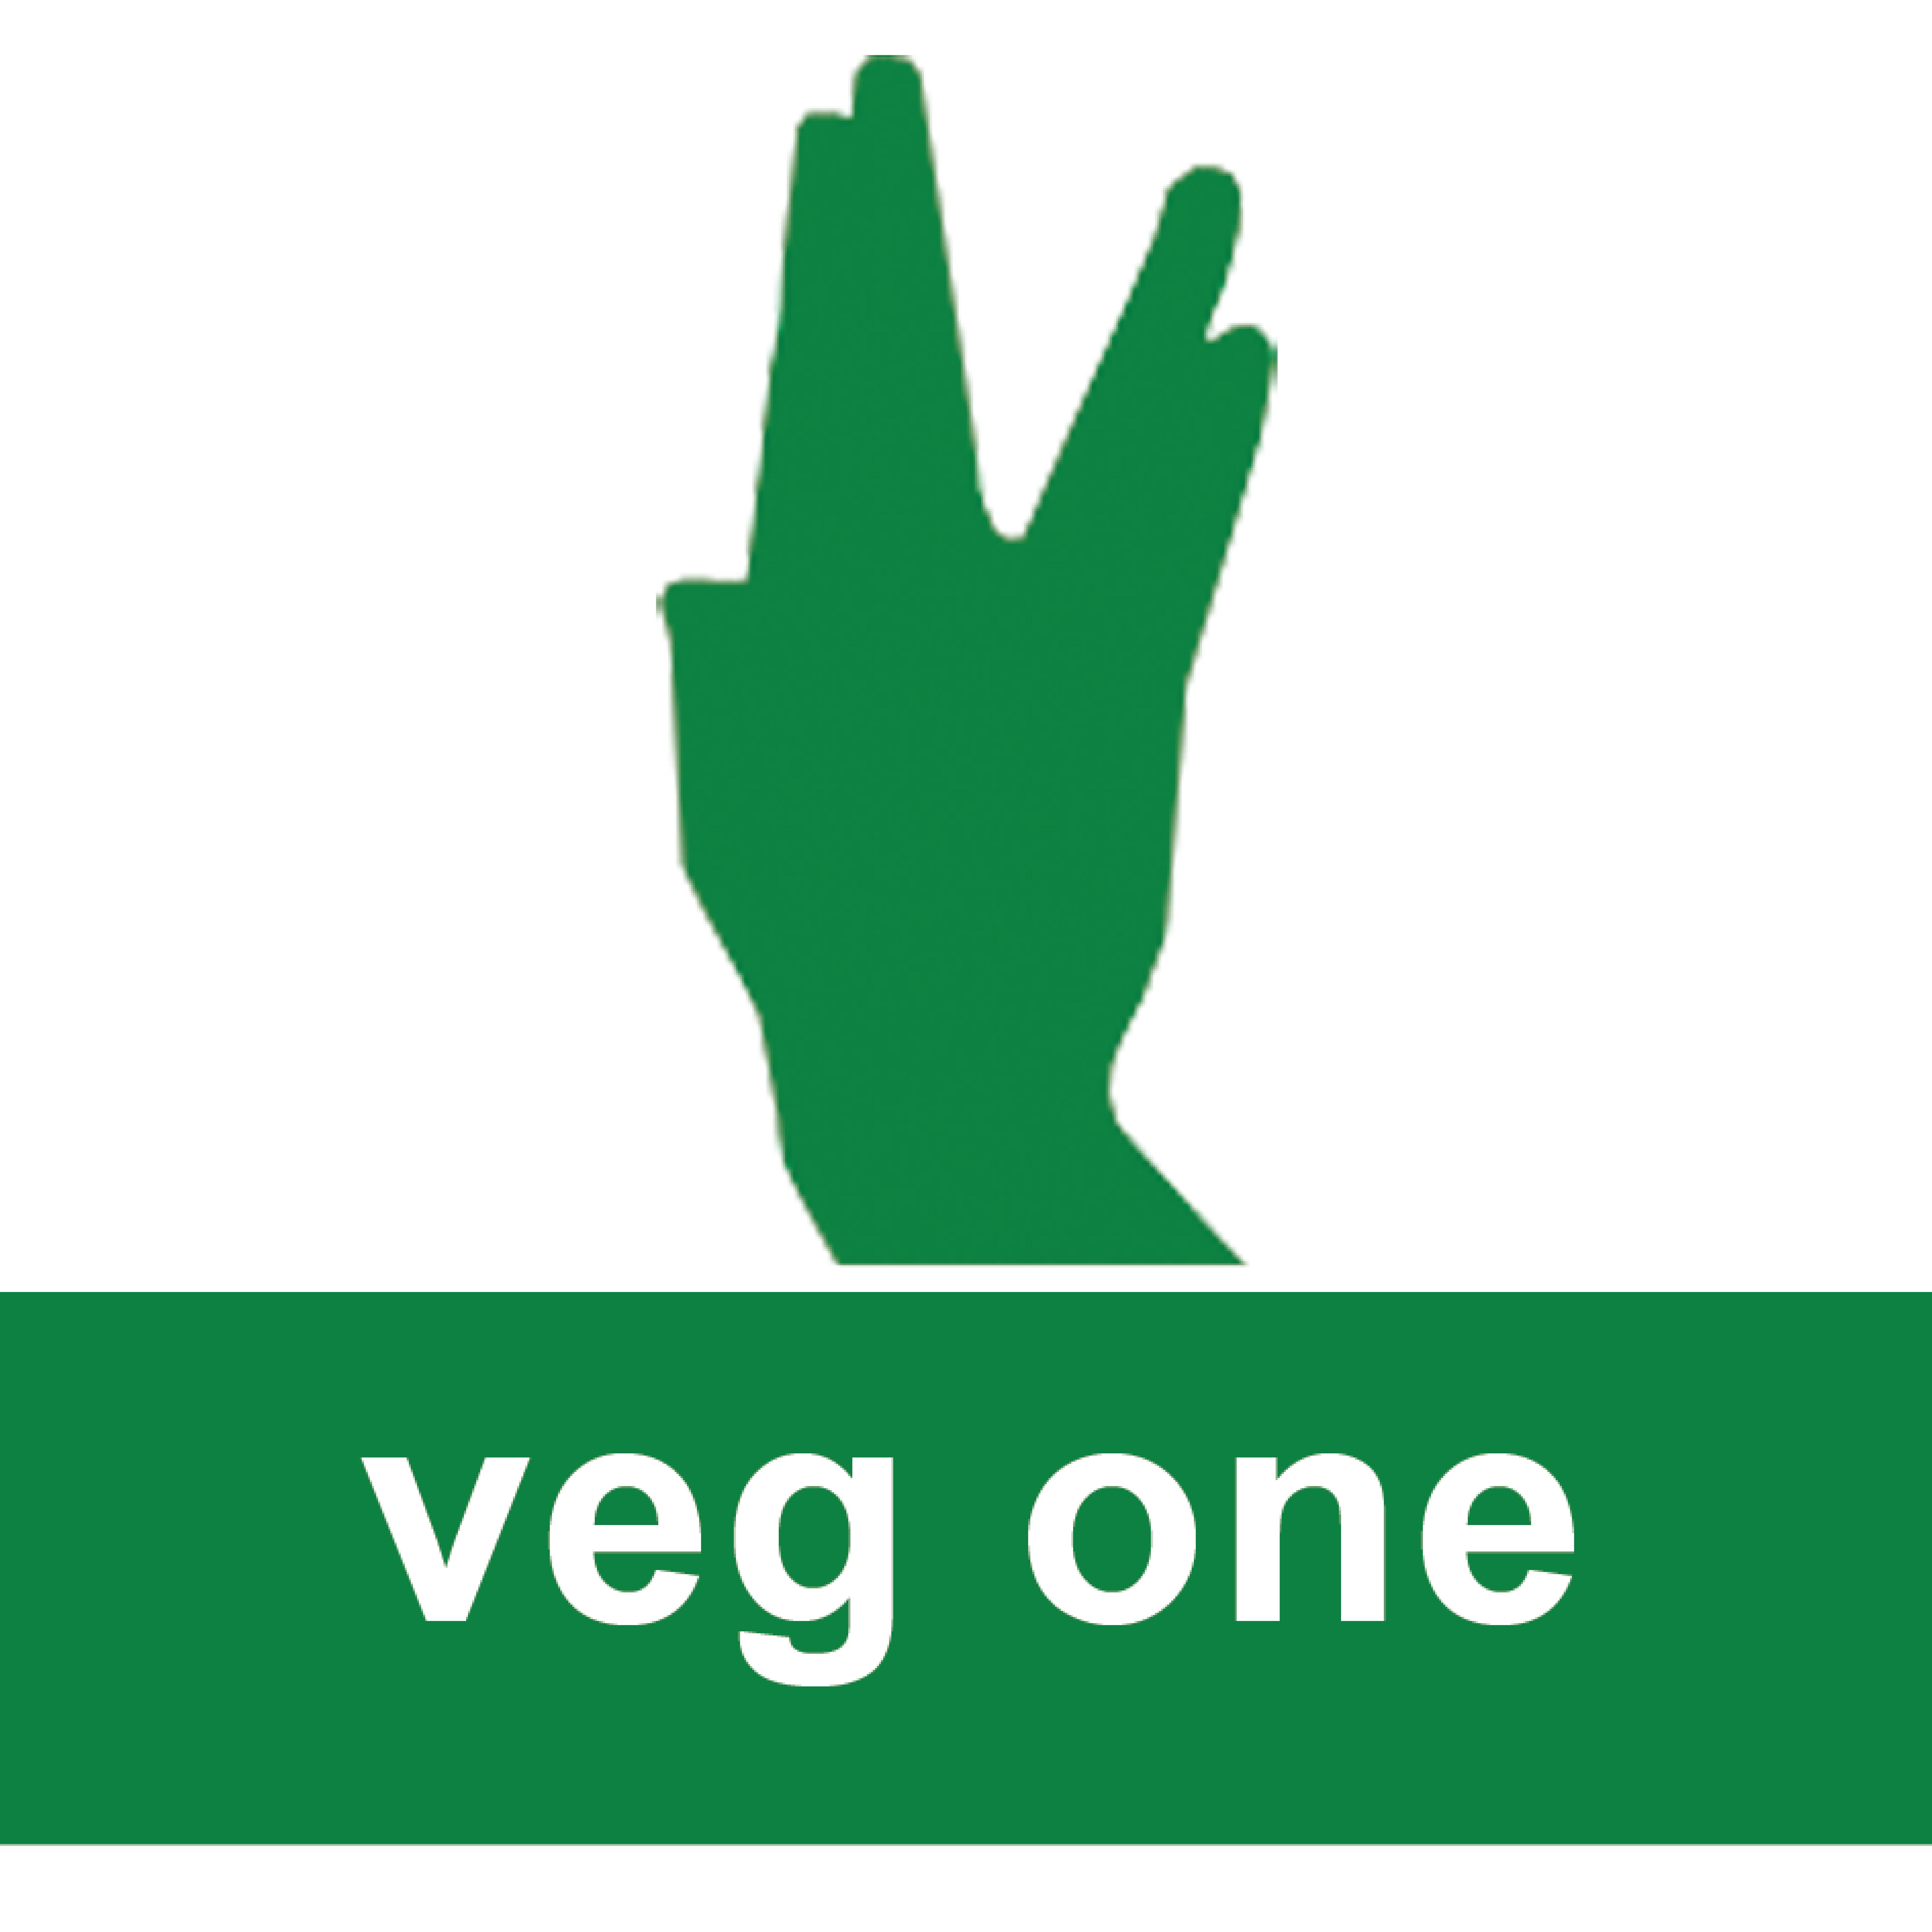 витамины для мужчин вегетарианцев вег ван (Orthomol veg one)